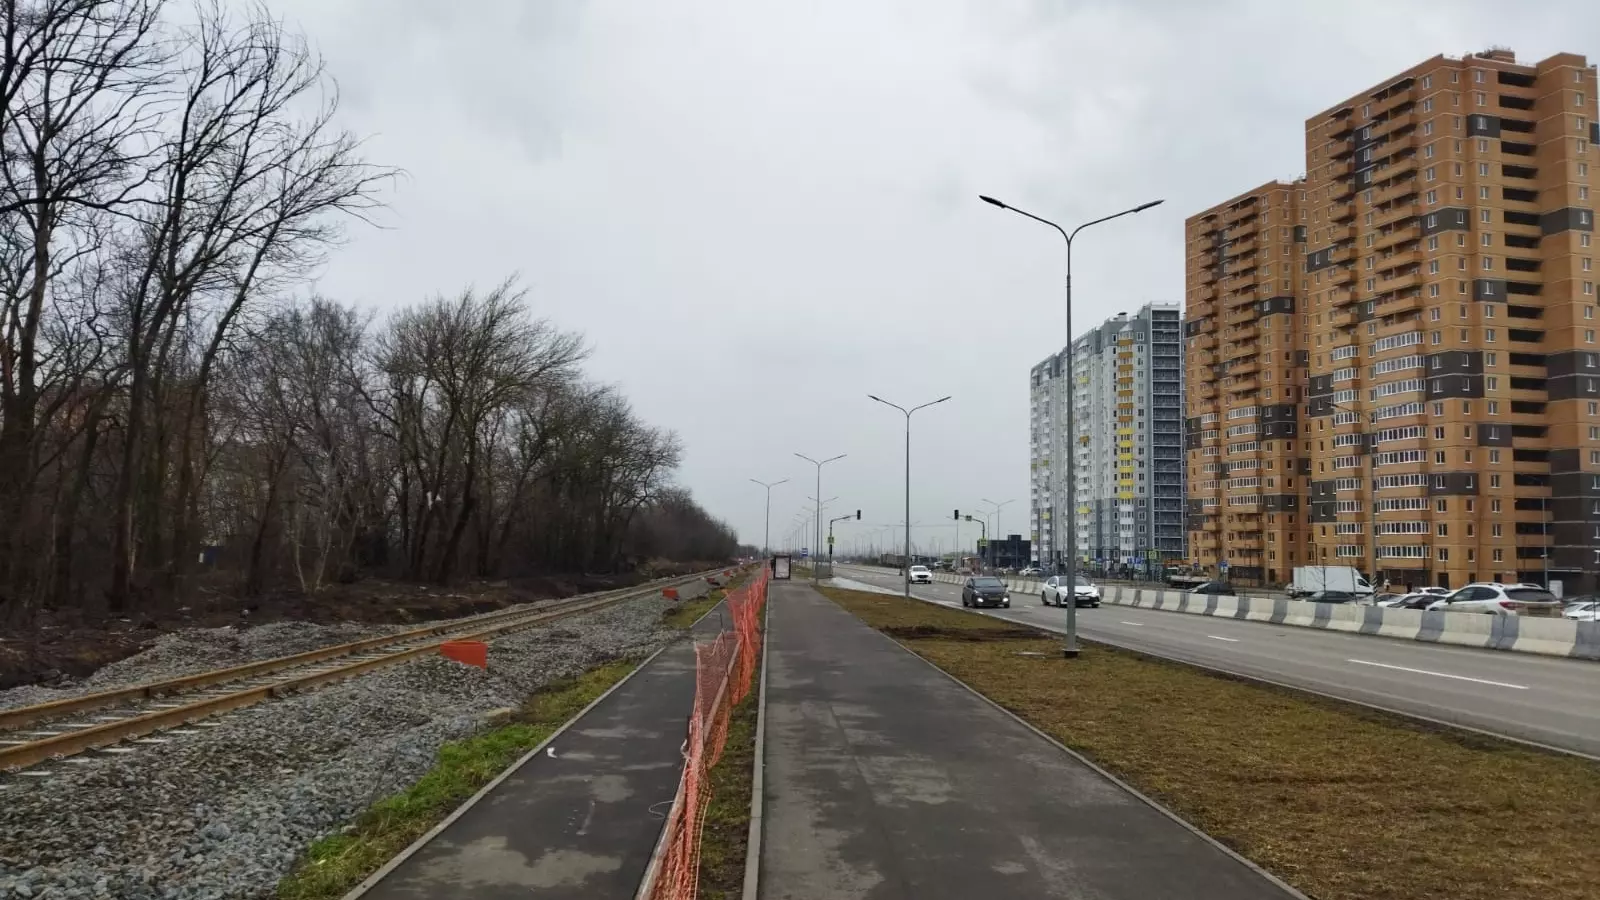 Активист не увидел строительства скоростного трамвая в Левенцовке в Ростове